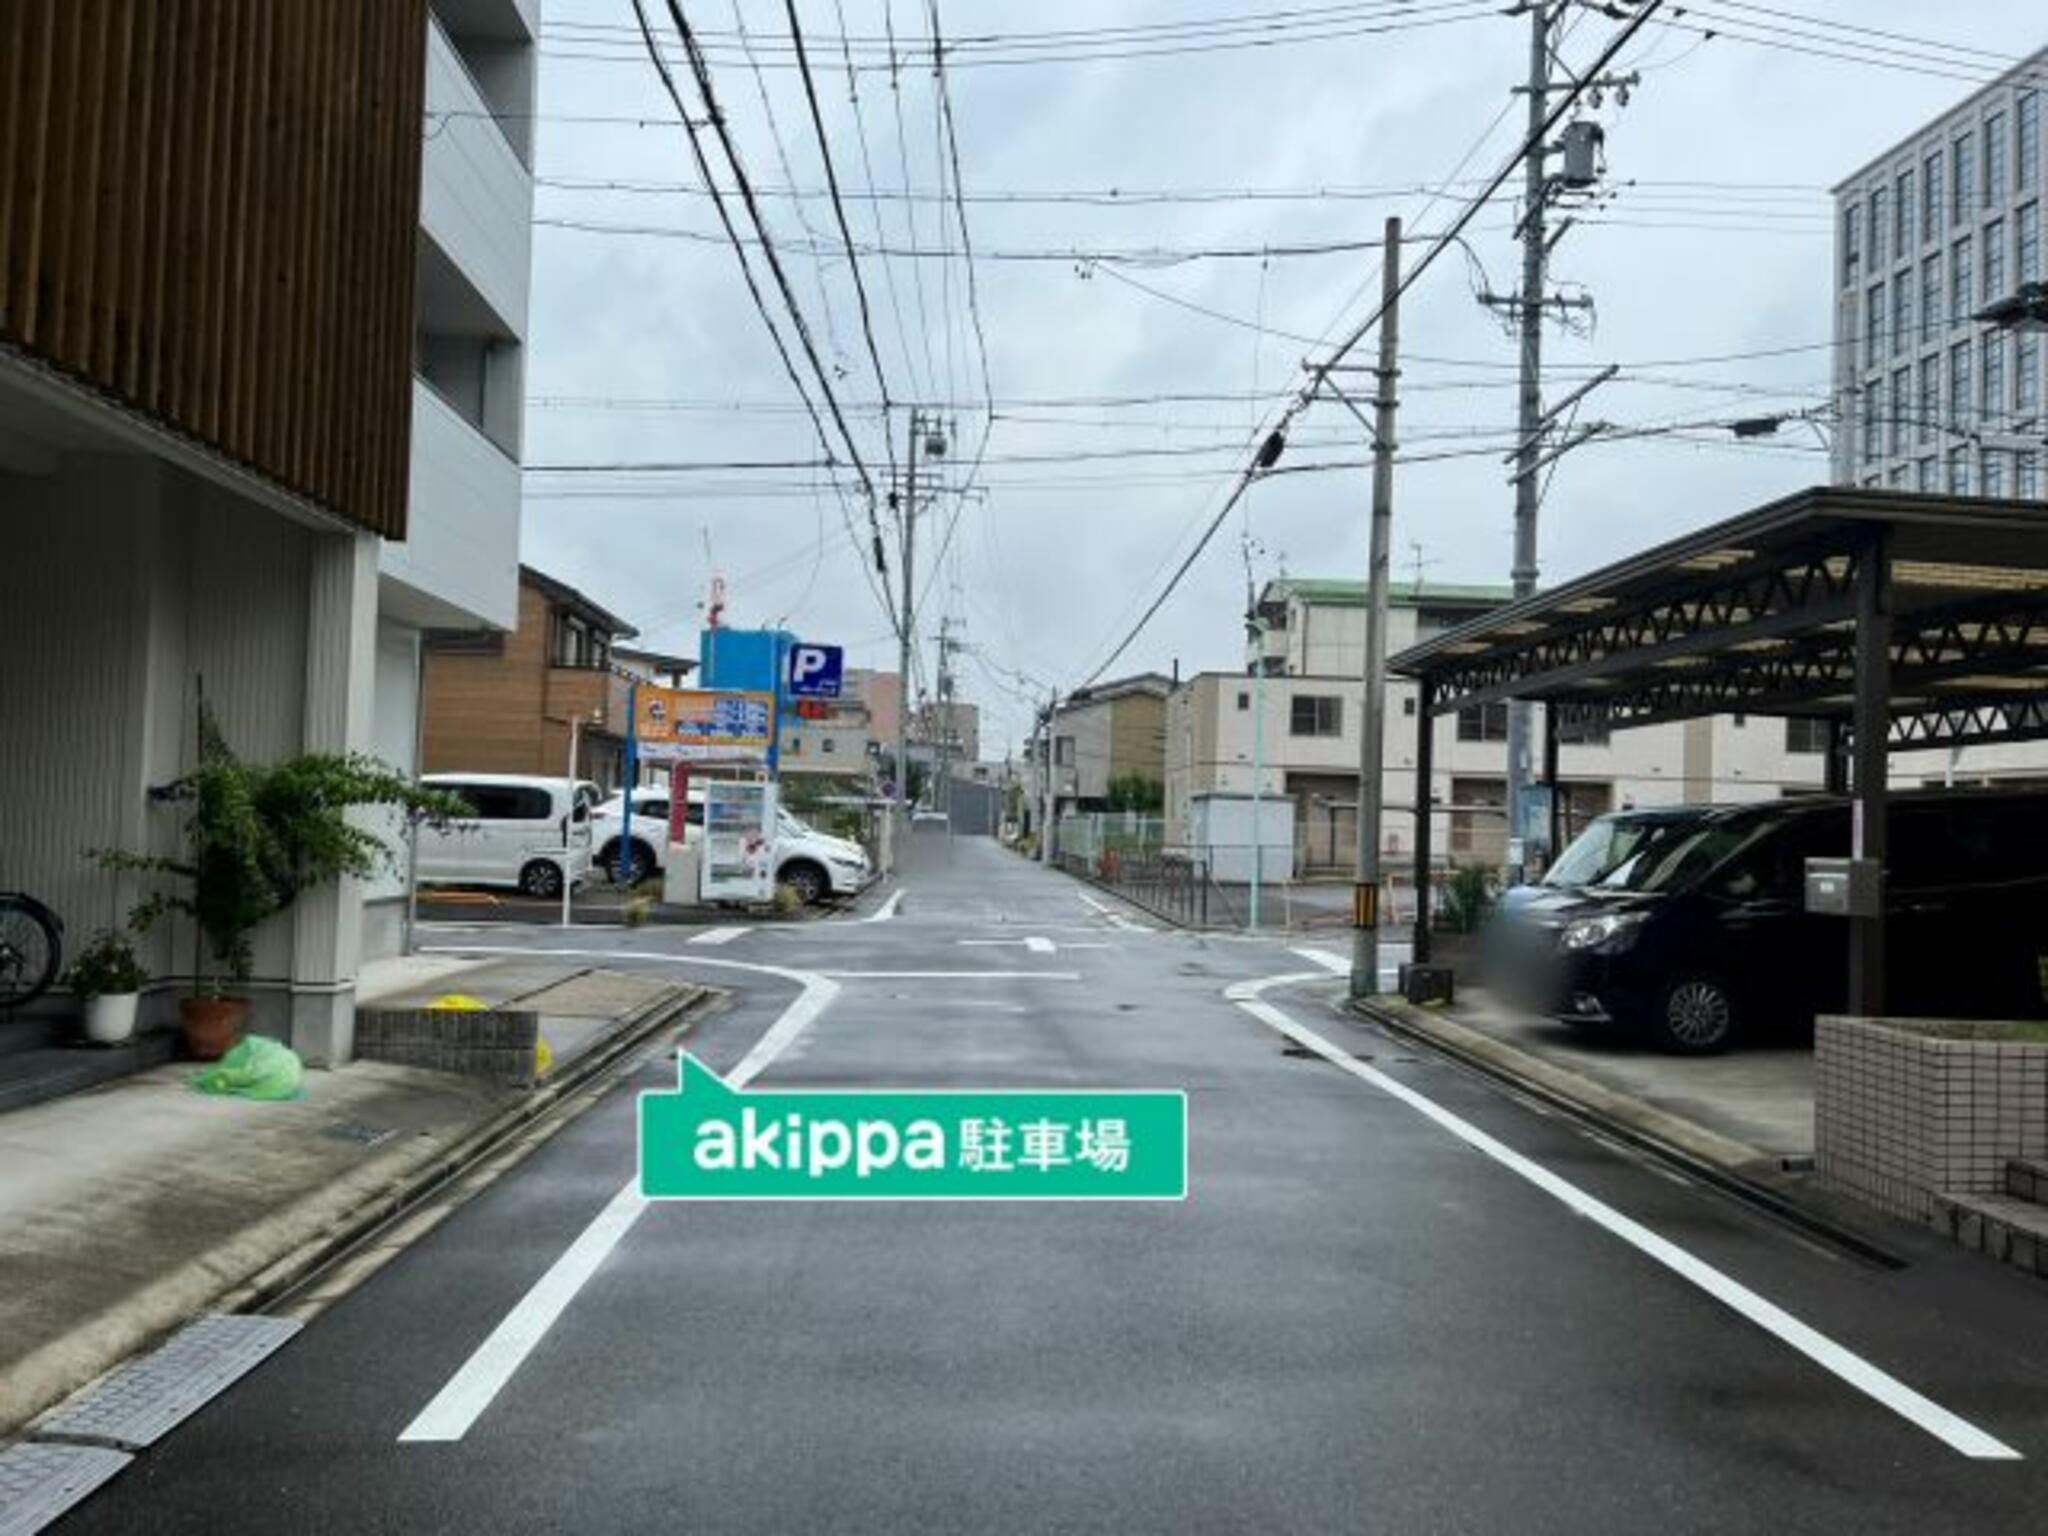 akippa駐車場:愛知県名古屋市東区筒井2丁目6-22の代表写真4